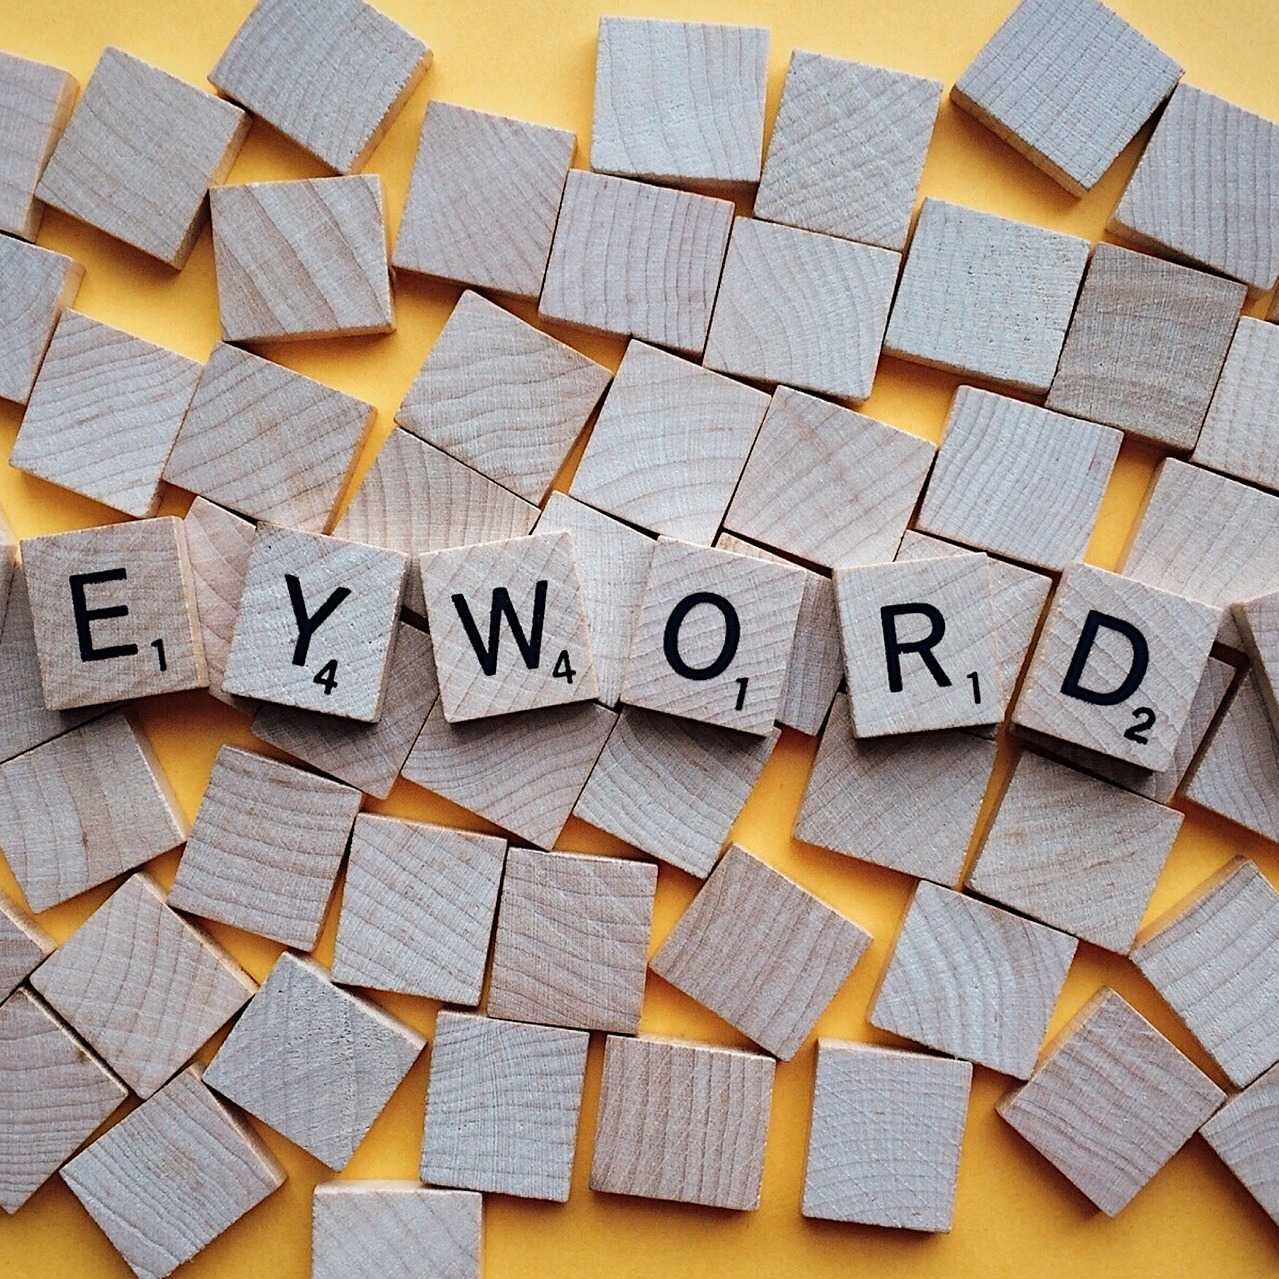 Ingliskeelne termin Keyword tähendab ühte või mitut sõna, mille kasutajad otsingumootoritesse kirjutavad, et leida ja vaadata neid huvipakkuvaid veebisaite